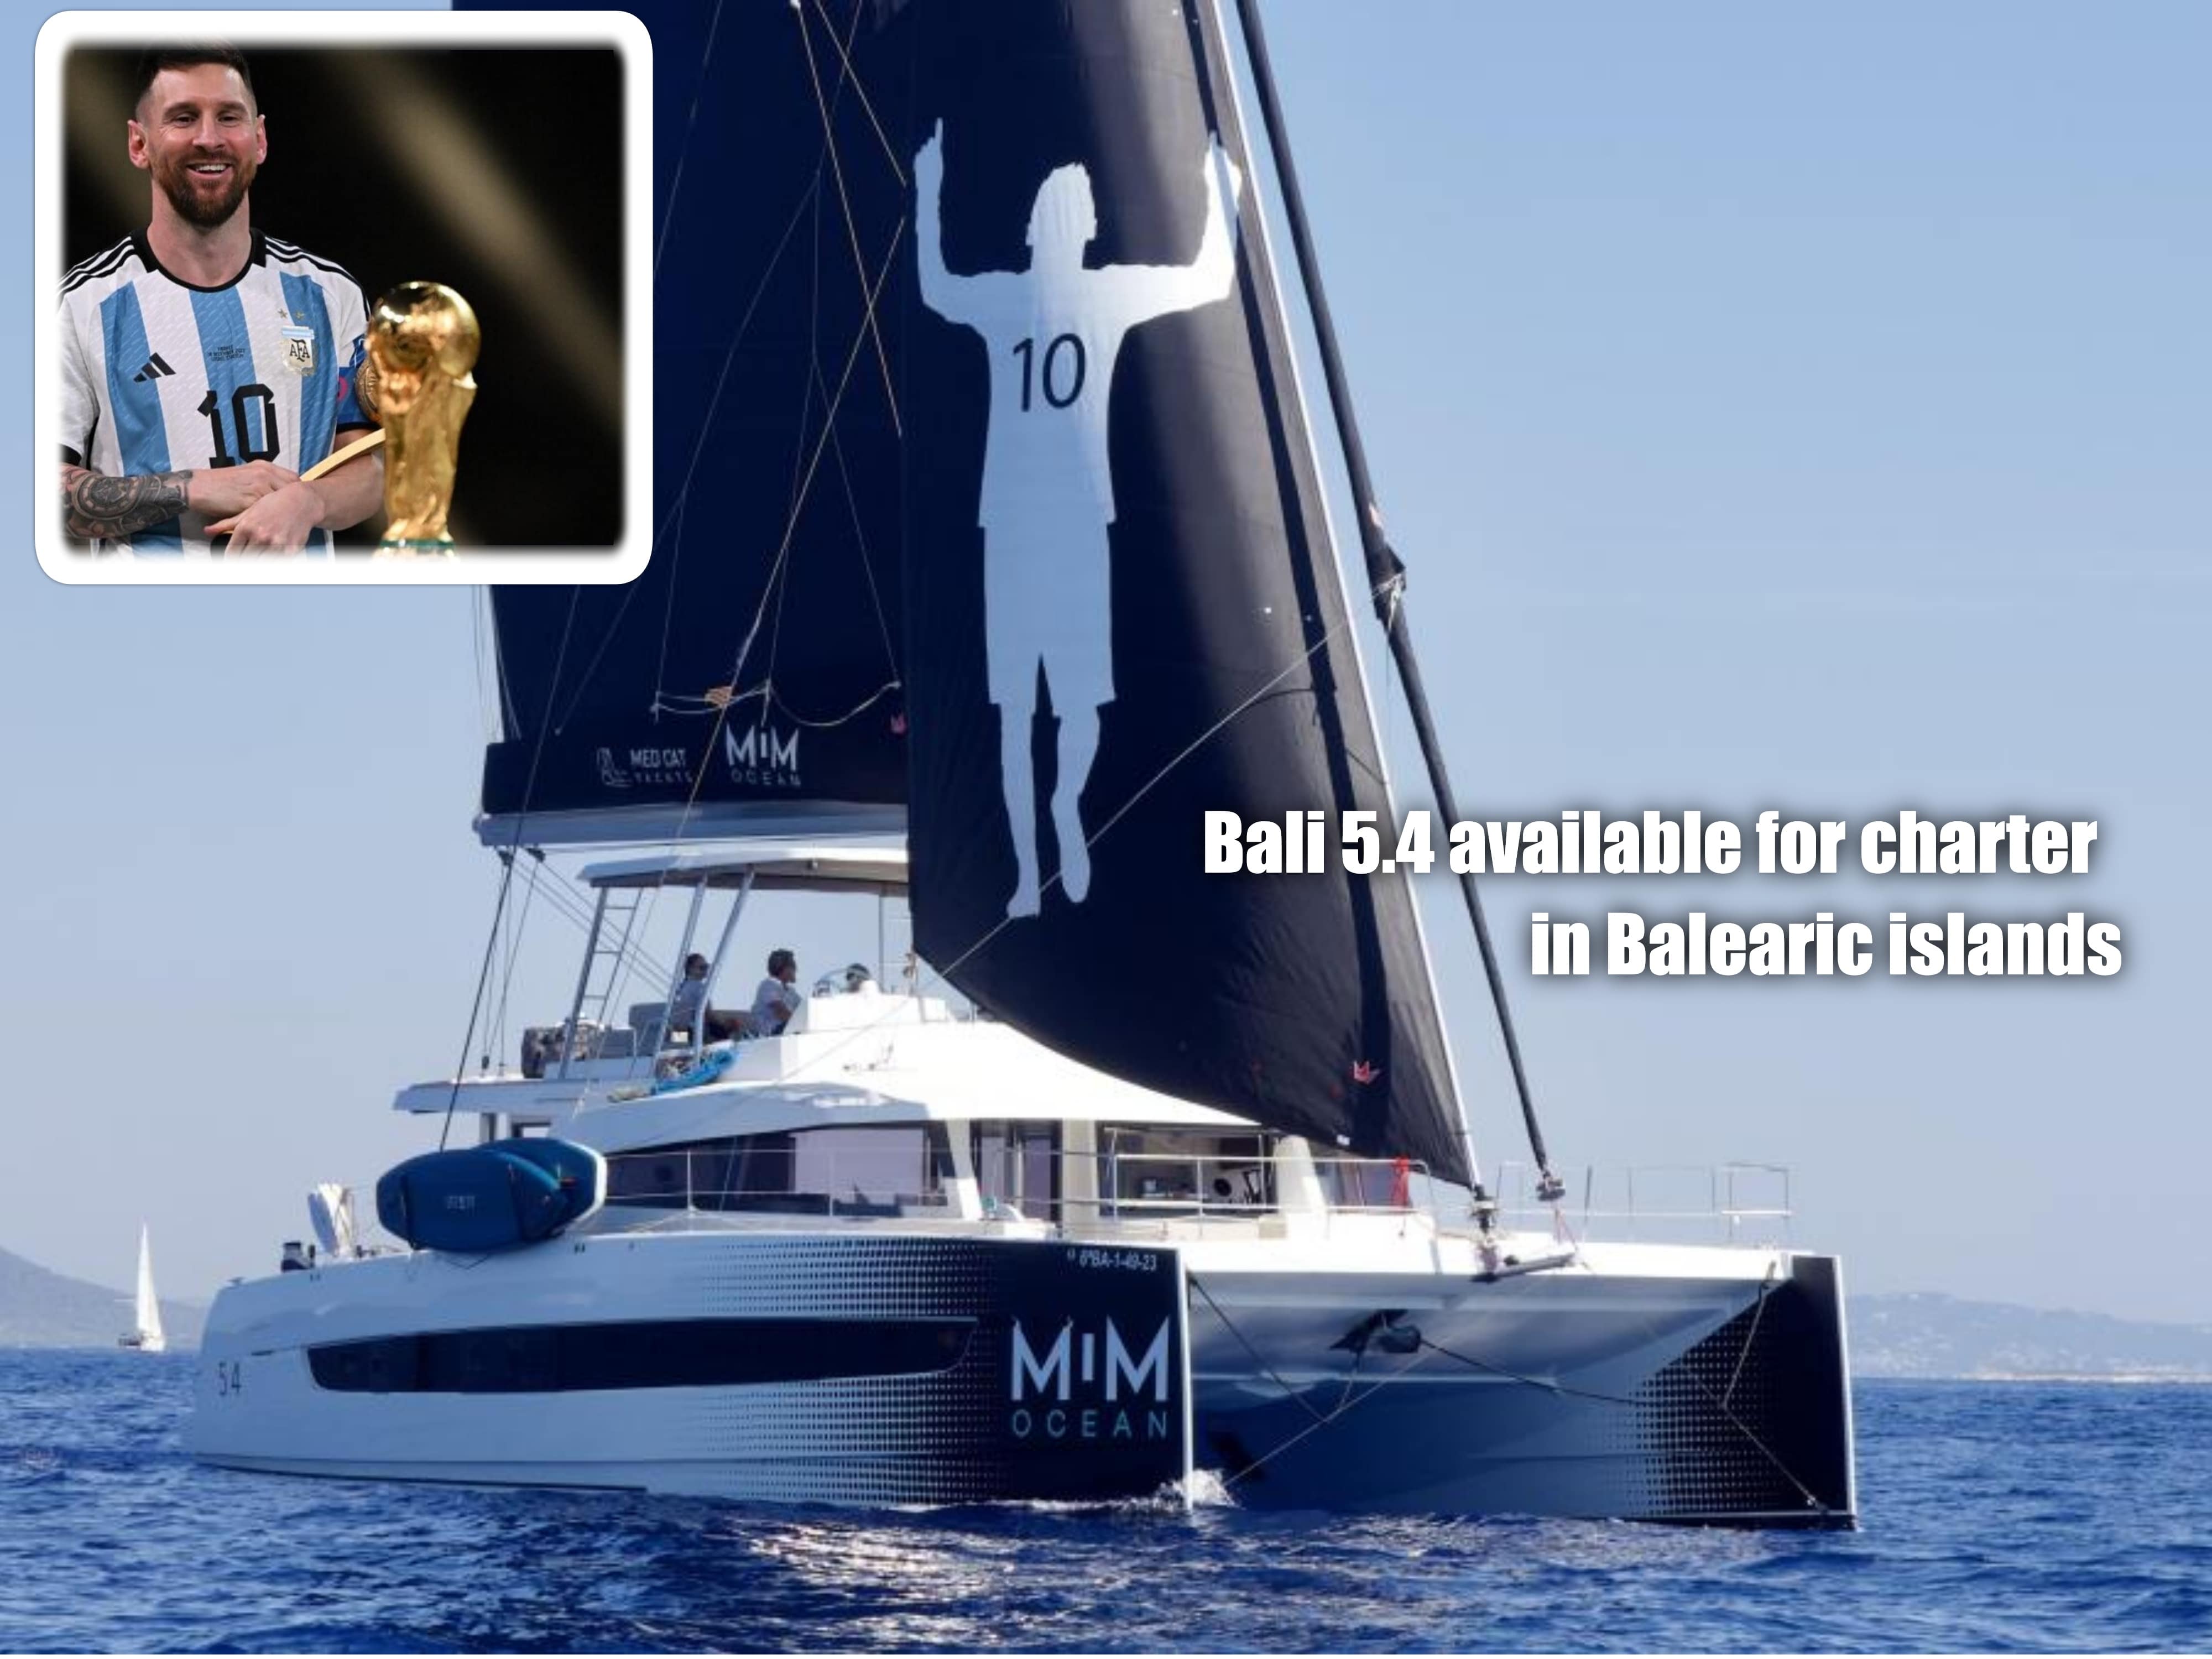 Messi lancia un nuovo progetto con Catamarans Bali 5.4 nelle Isole Baleari